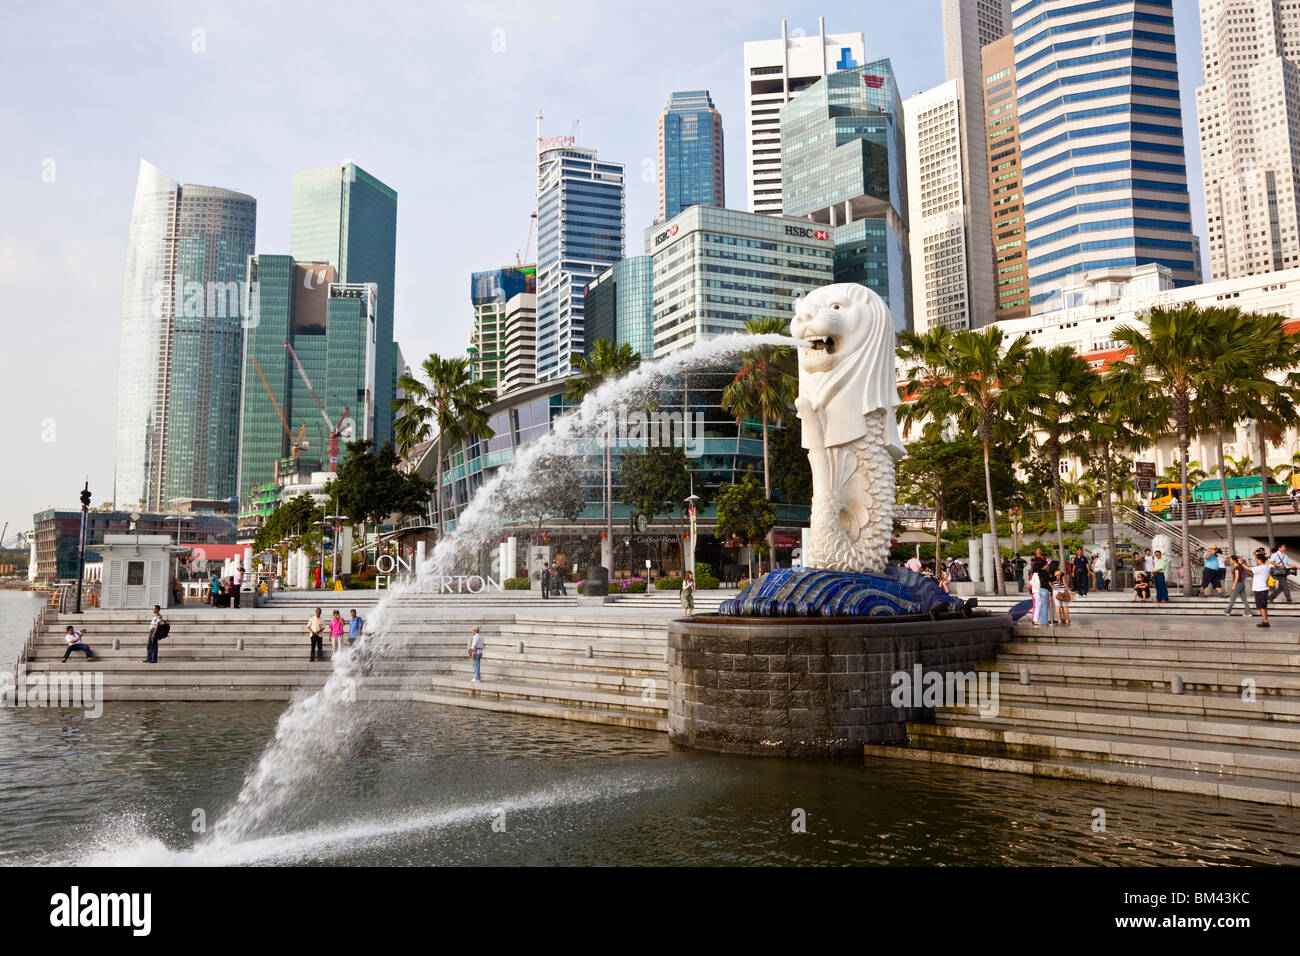 La statua Merlion e dello skyline della città, Esplanade, Singapore Foto Stock